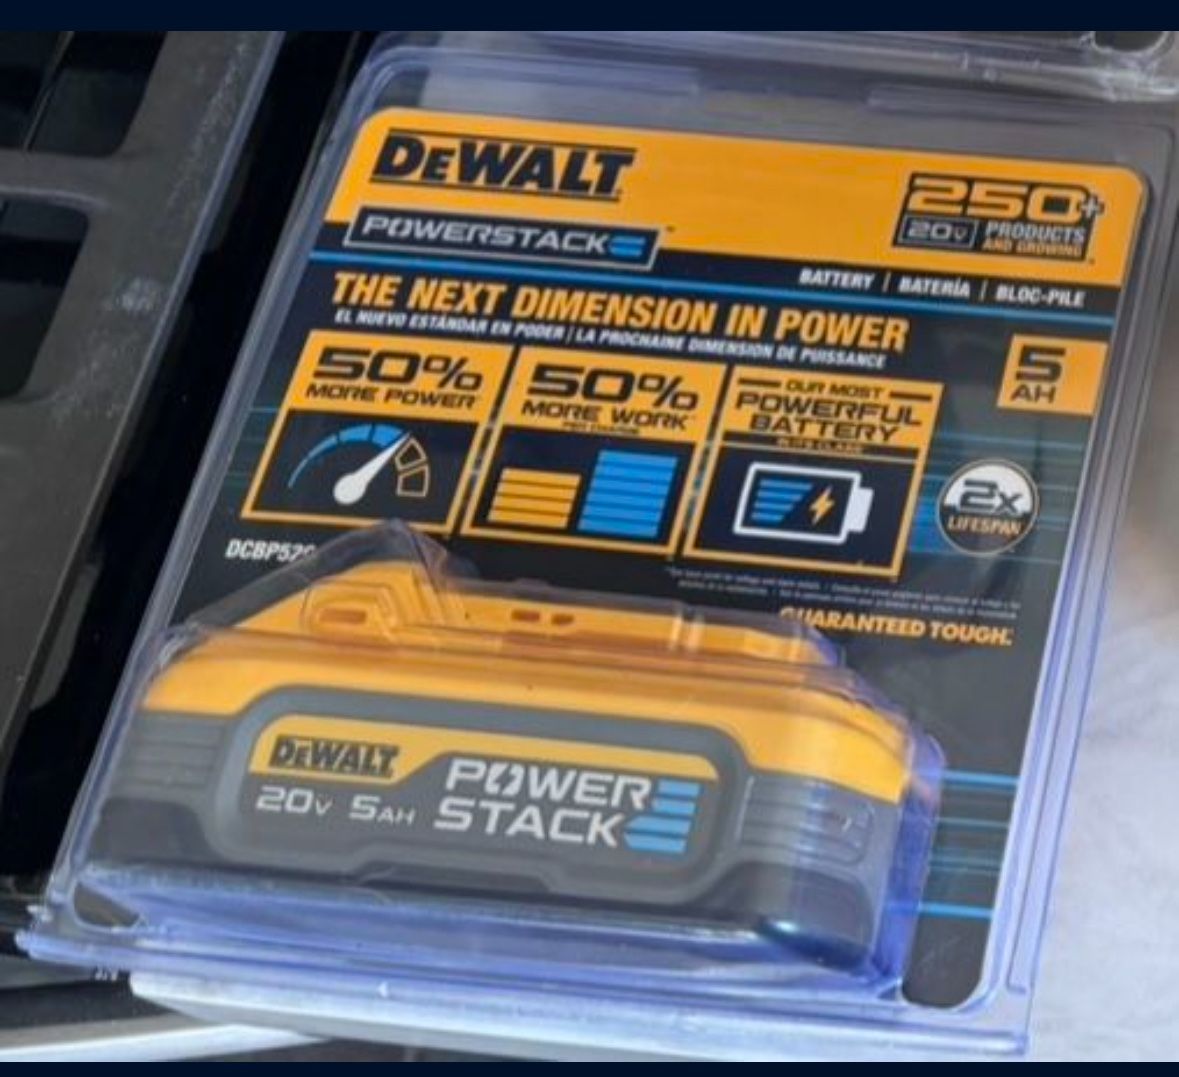 DeWalt Powerstack Battery 20 V 5amp!